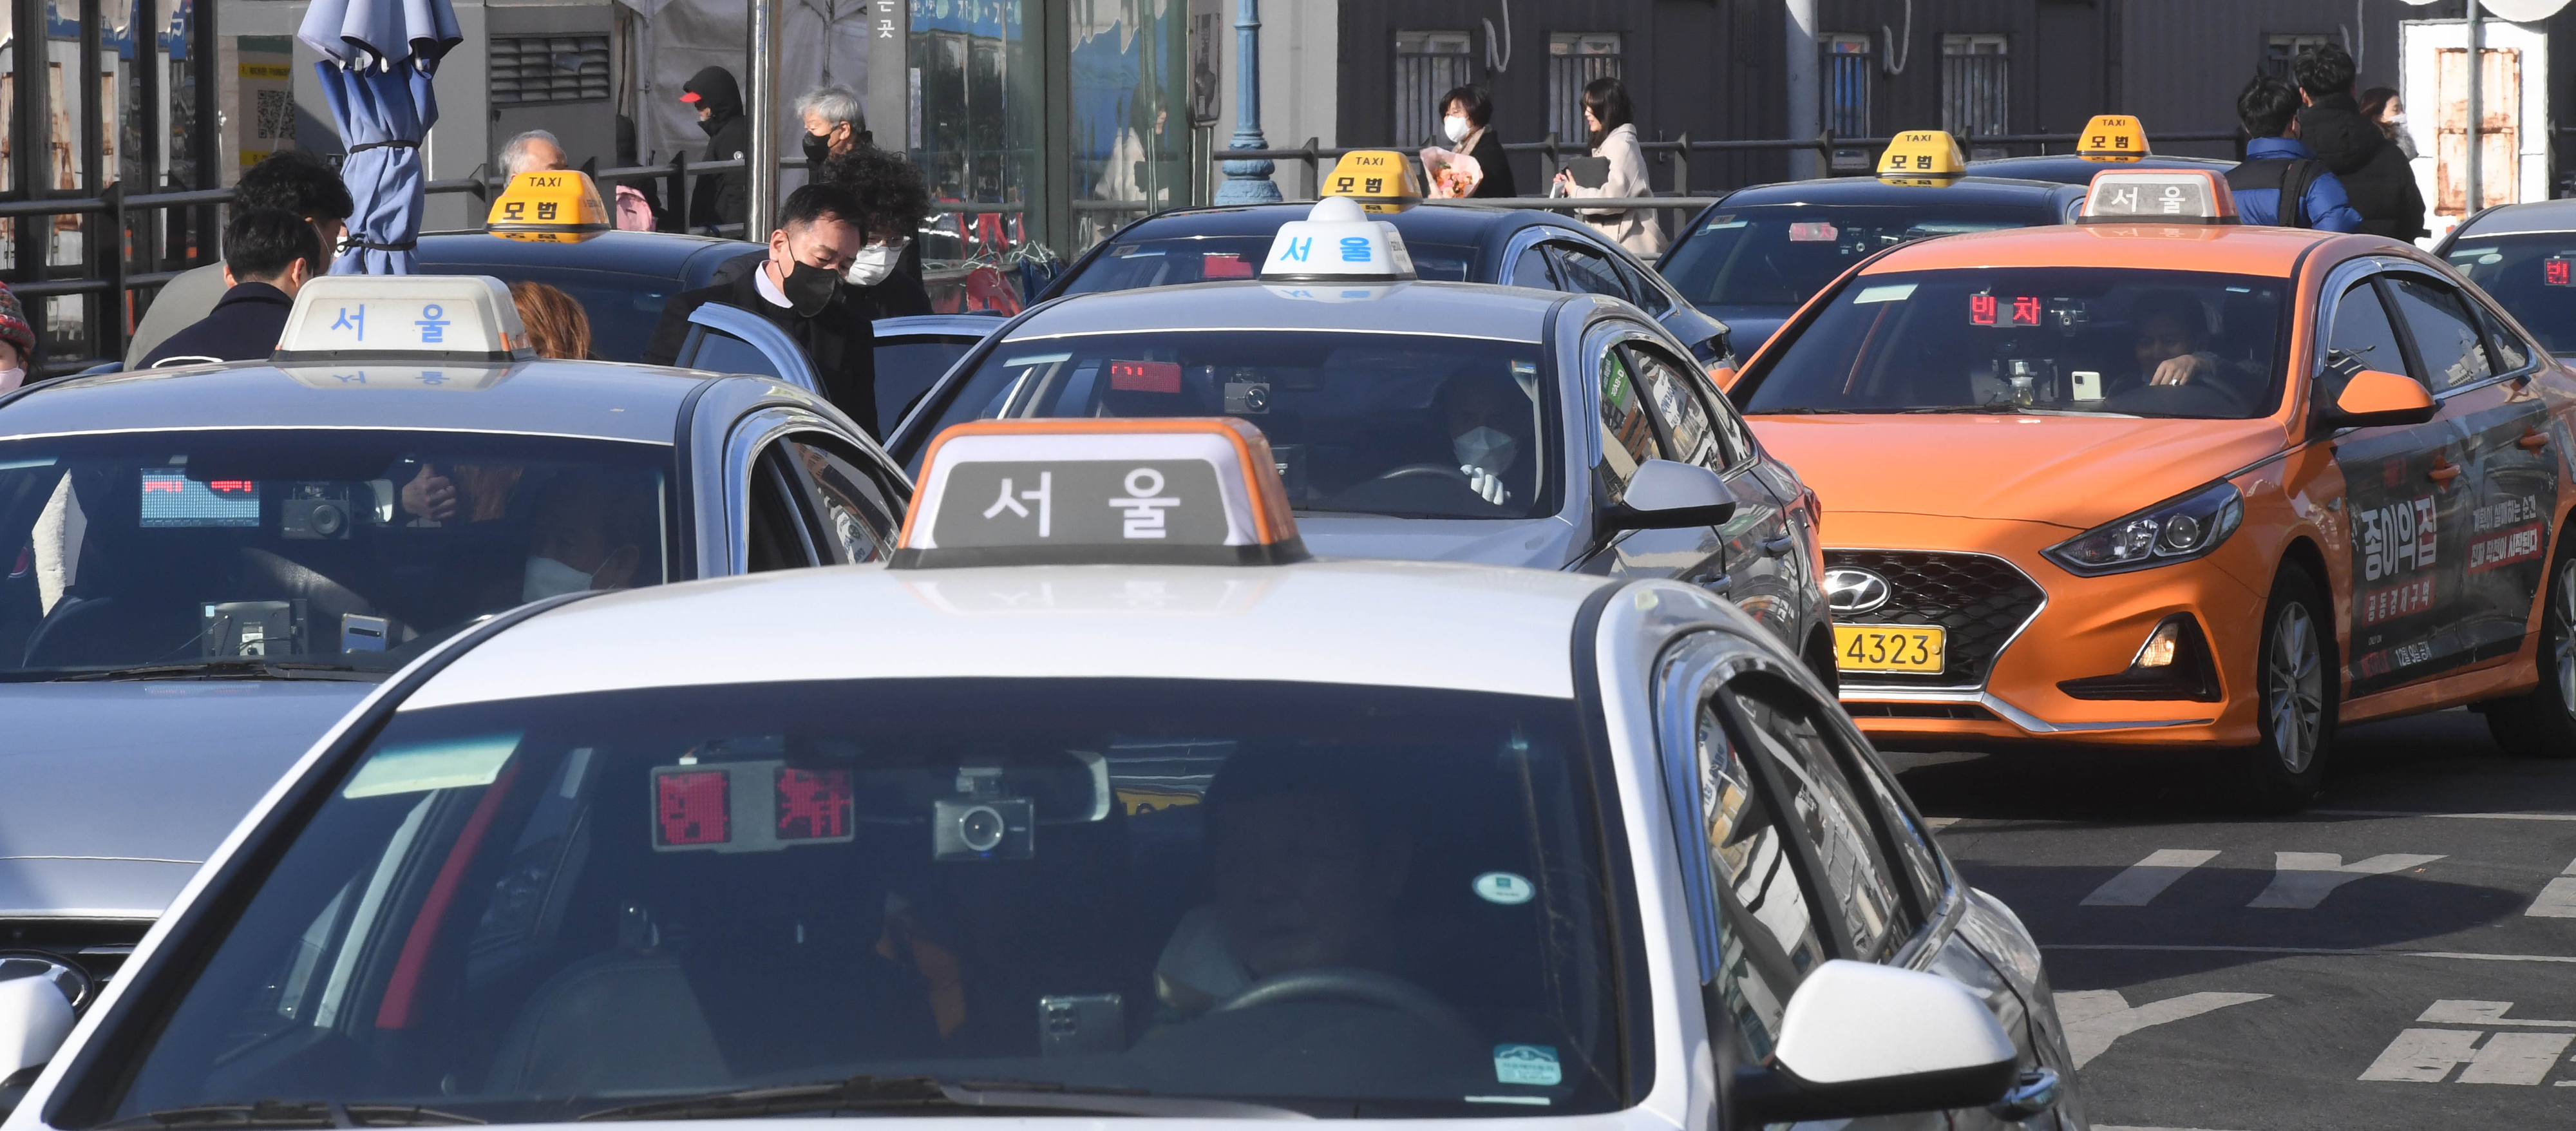 서울 용산구 서울역 택시 승강장에 택시들이 탑승객을 태우기 위해 들어서는 모습.   홍윤기 기자